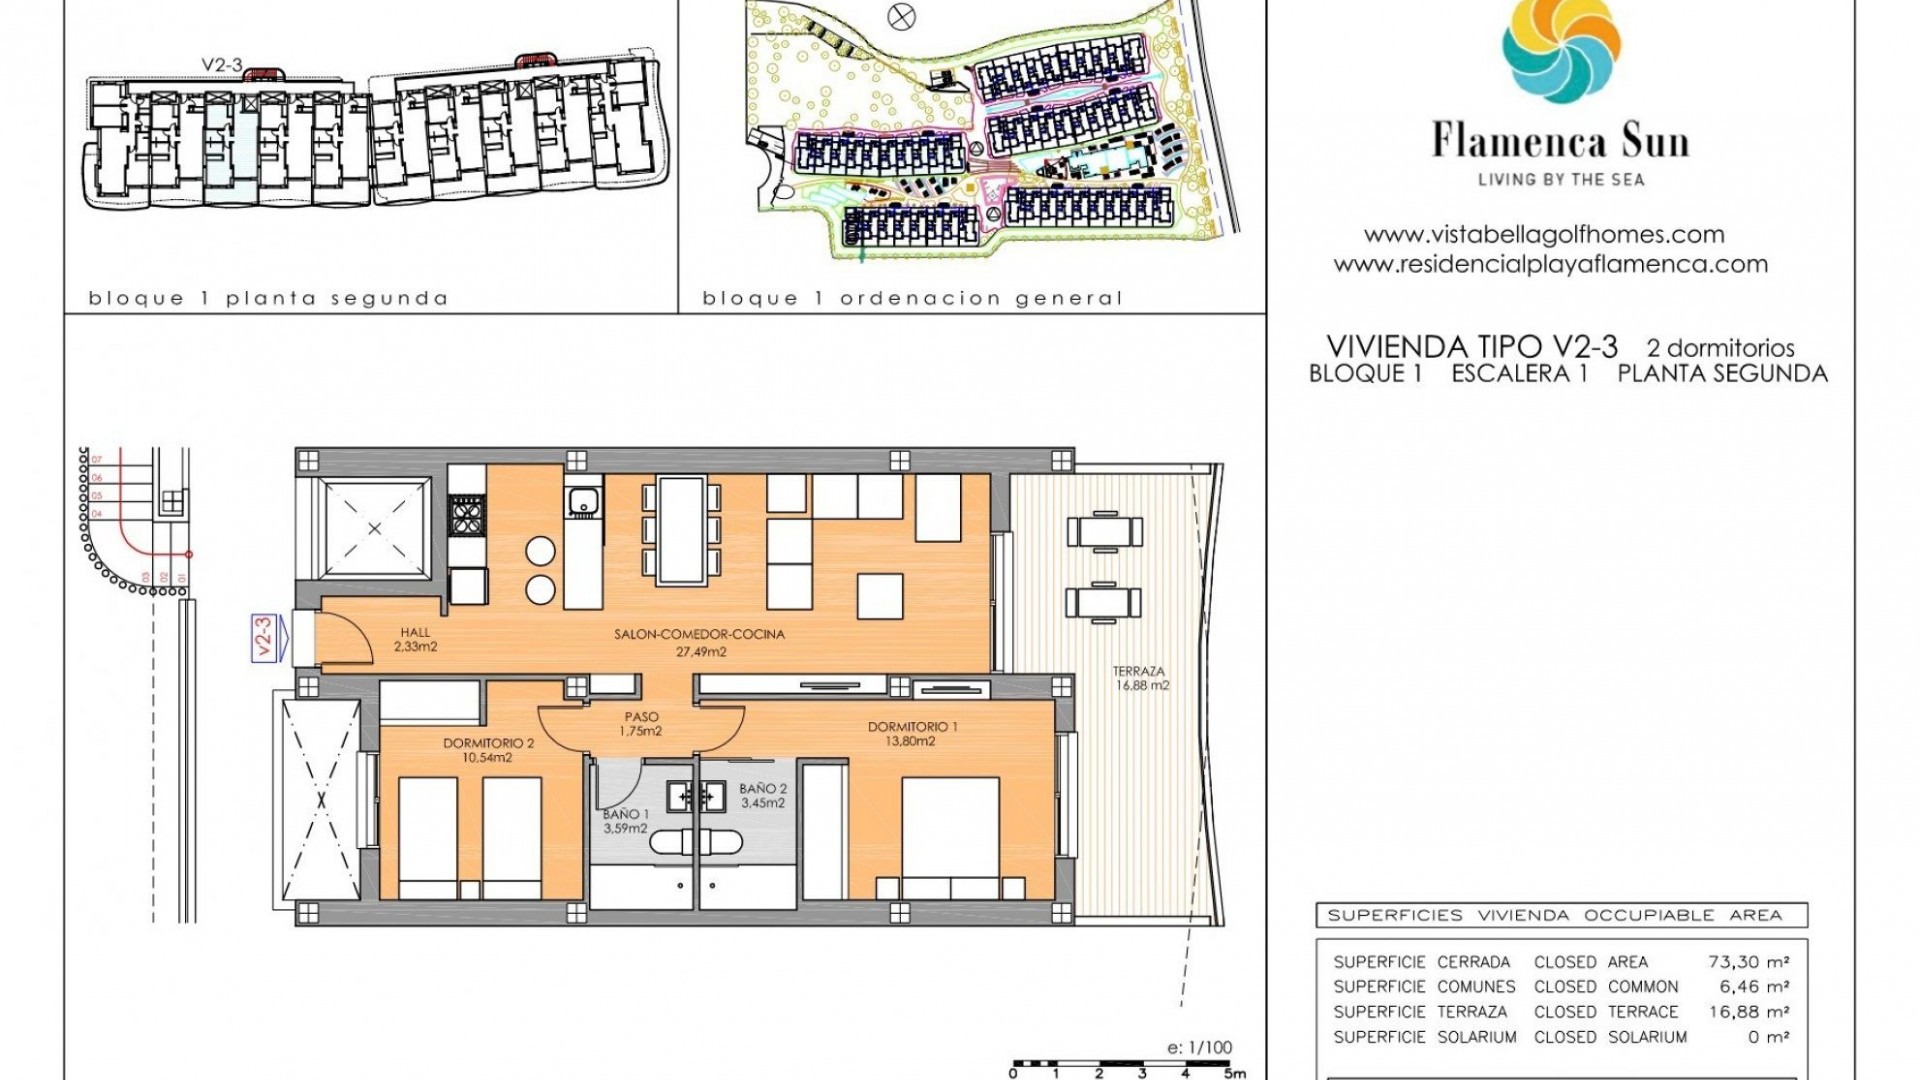 Nowa konstrukcja - Mieszkanie w bloku -
Orihuela Costa - Playa Flamenca